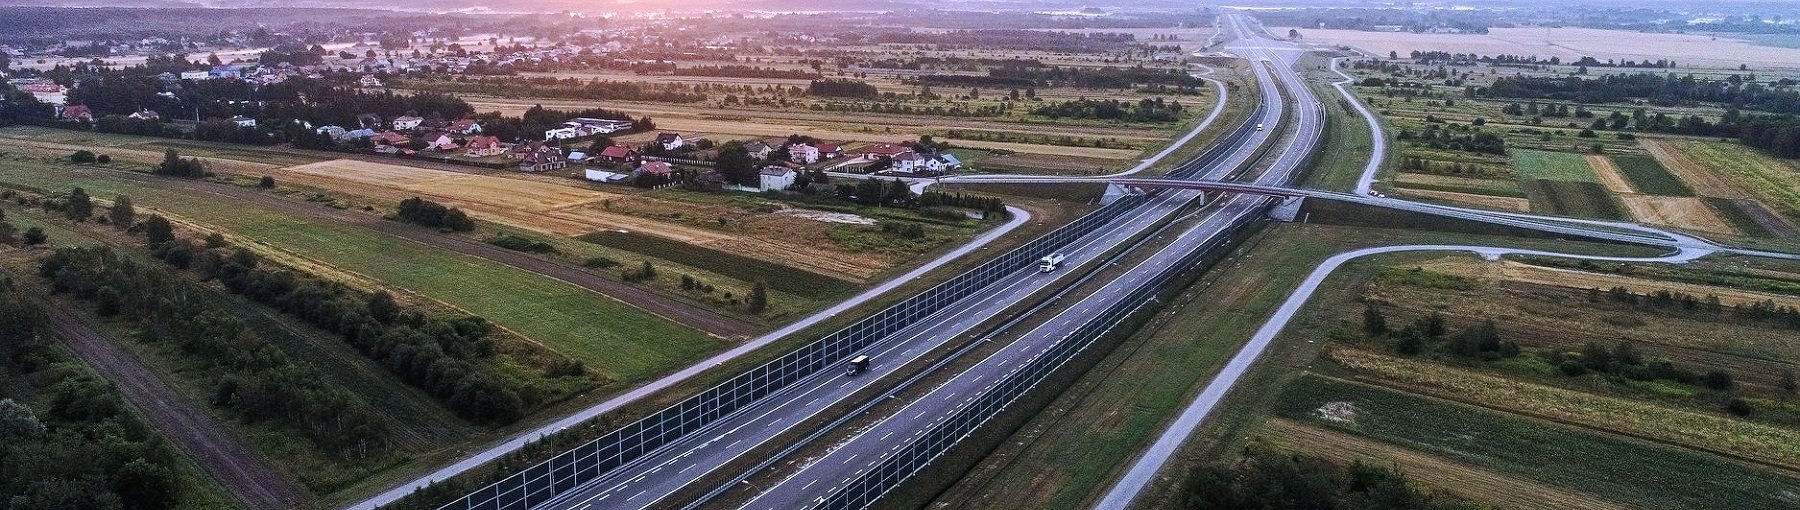 Via Carptia: udostepnienie kierowcom do ruchu całej drogi ekspresowej S19 między Rzeszowem a Lublinem planowane jest na 2021 r. Fot. GDDKiA